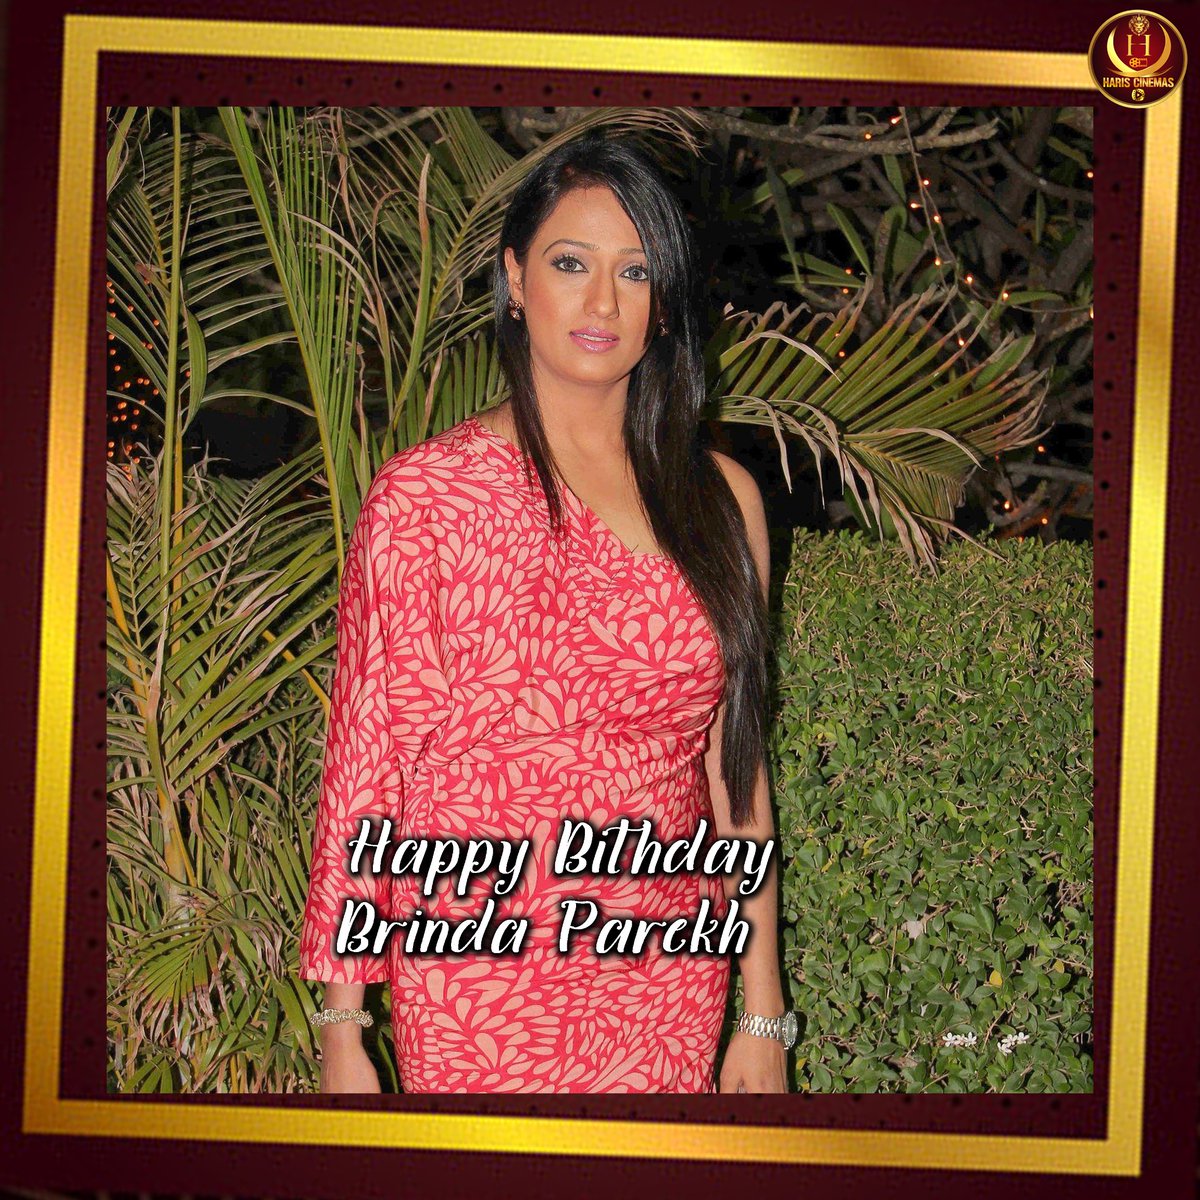 Happy birthday @BRINDAPAREKH #BrindaParekh #BrindaParekhHappyBirthday #BirthdaySpecial  #hariscinemas